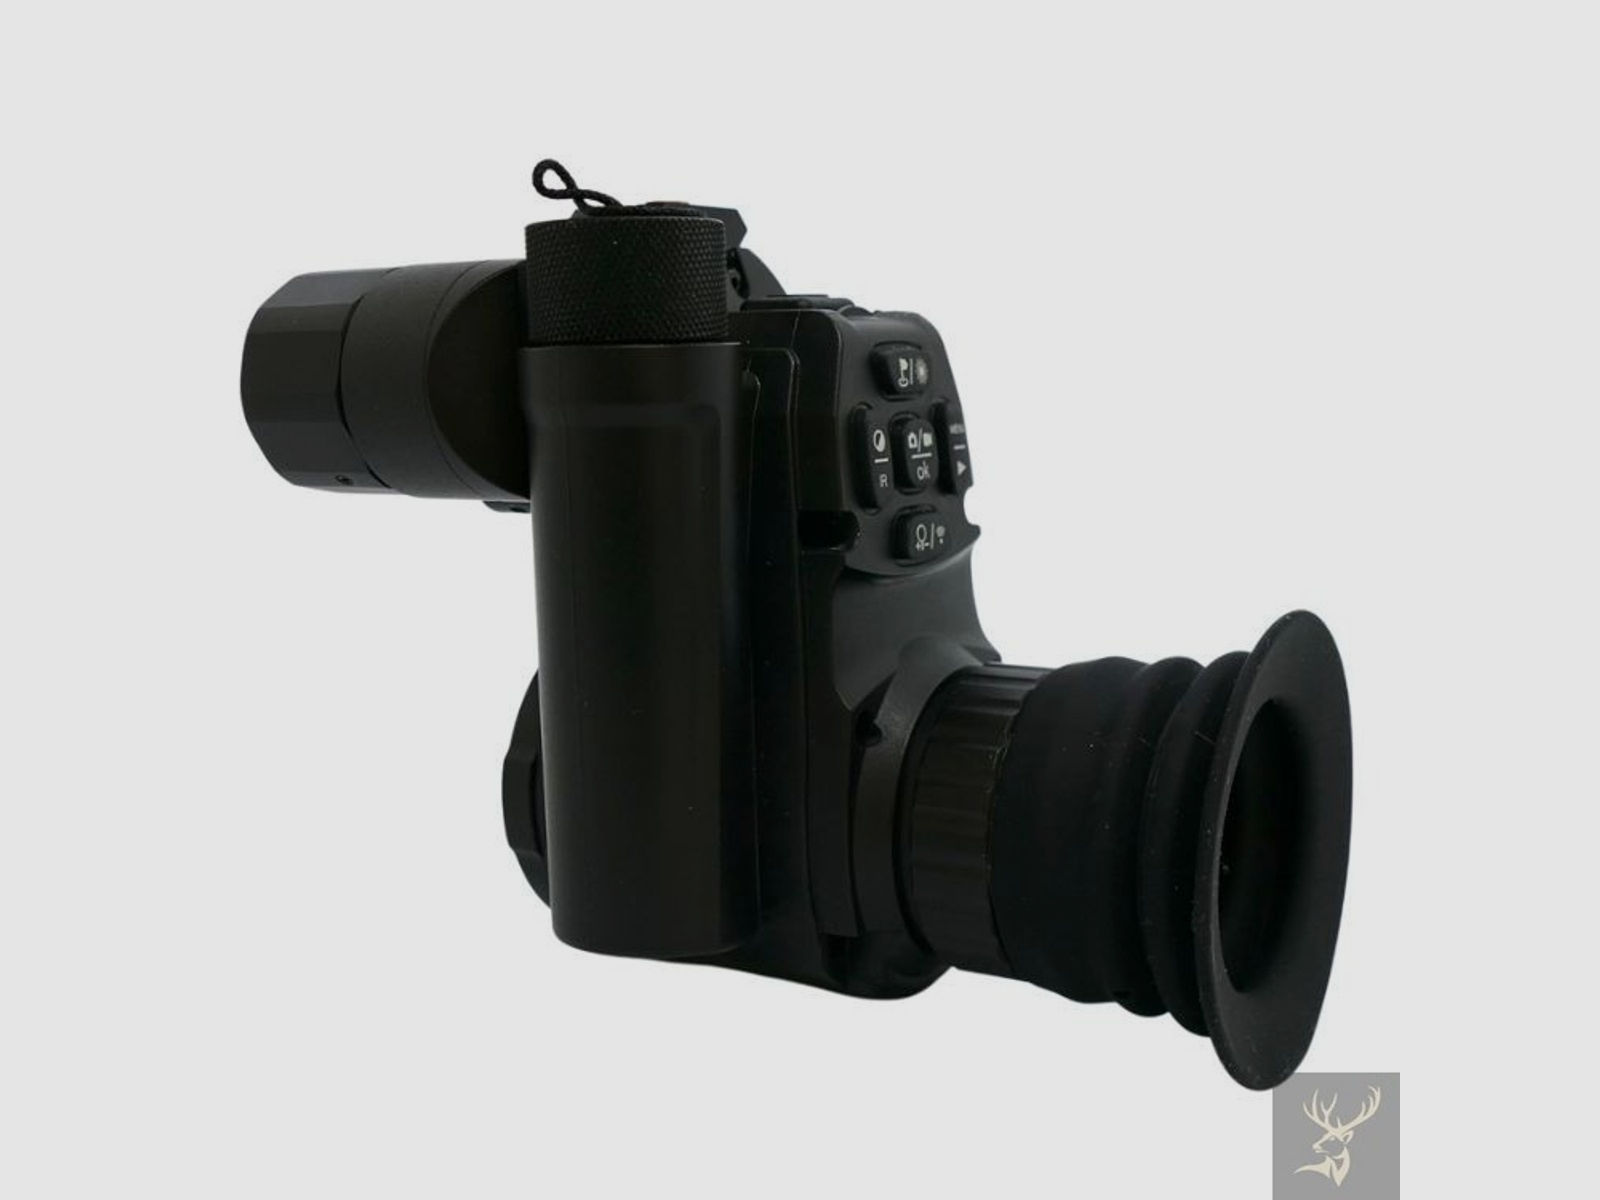 Pard-Nachtsicht PARD-007SP 940nm LRF 45mm